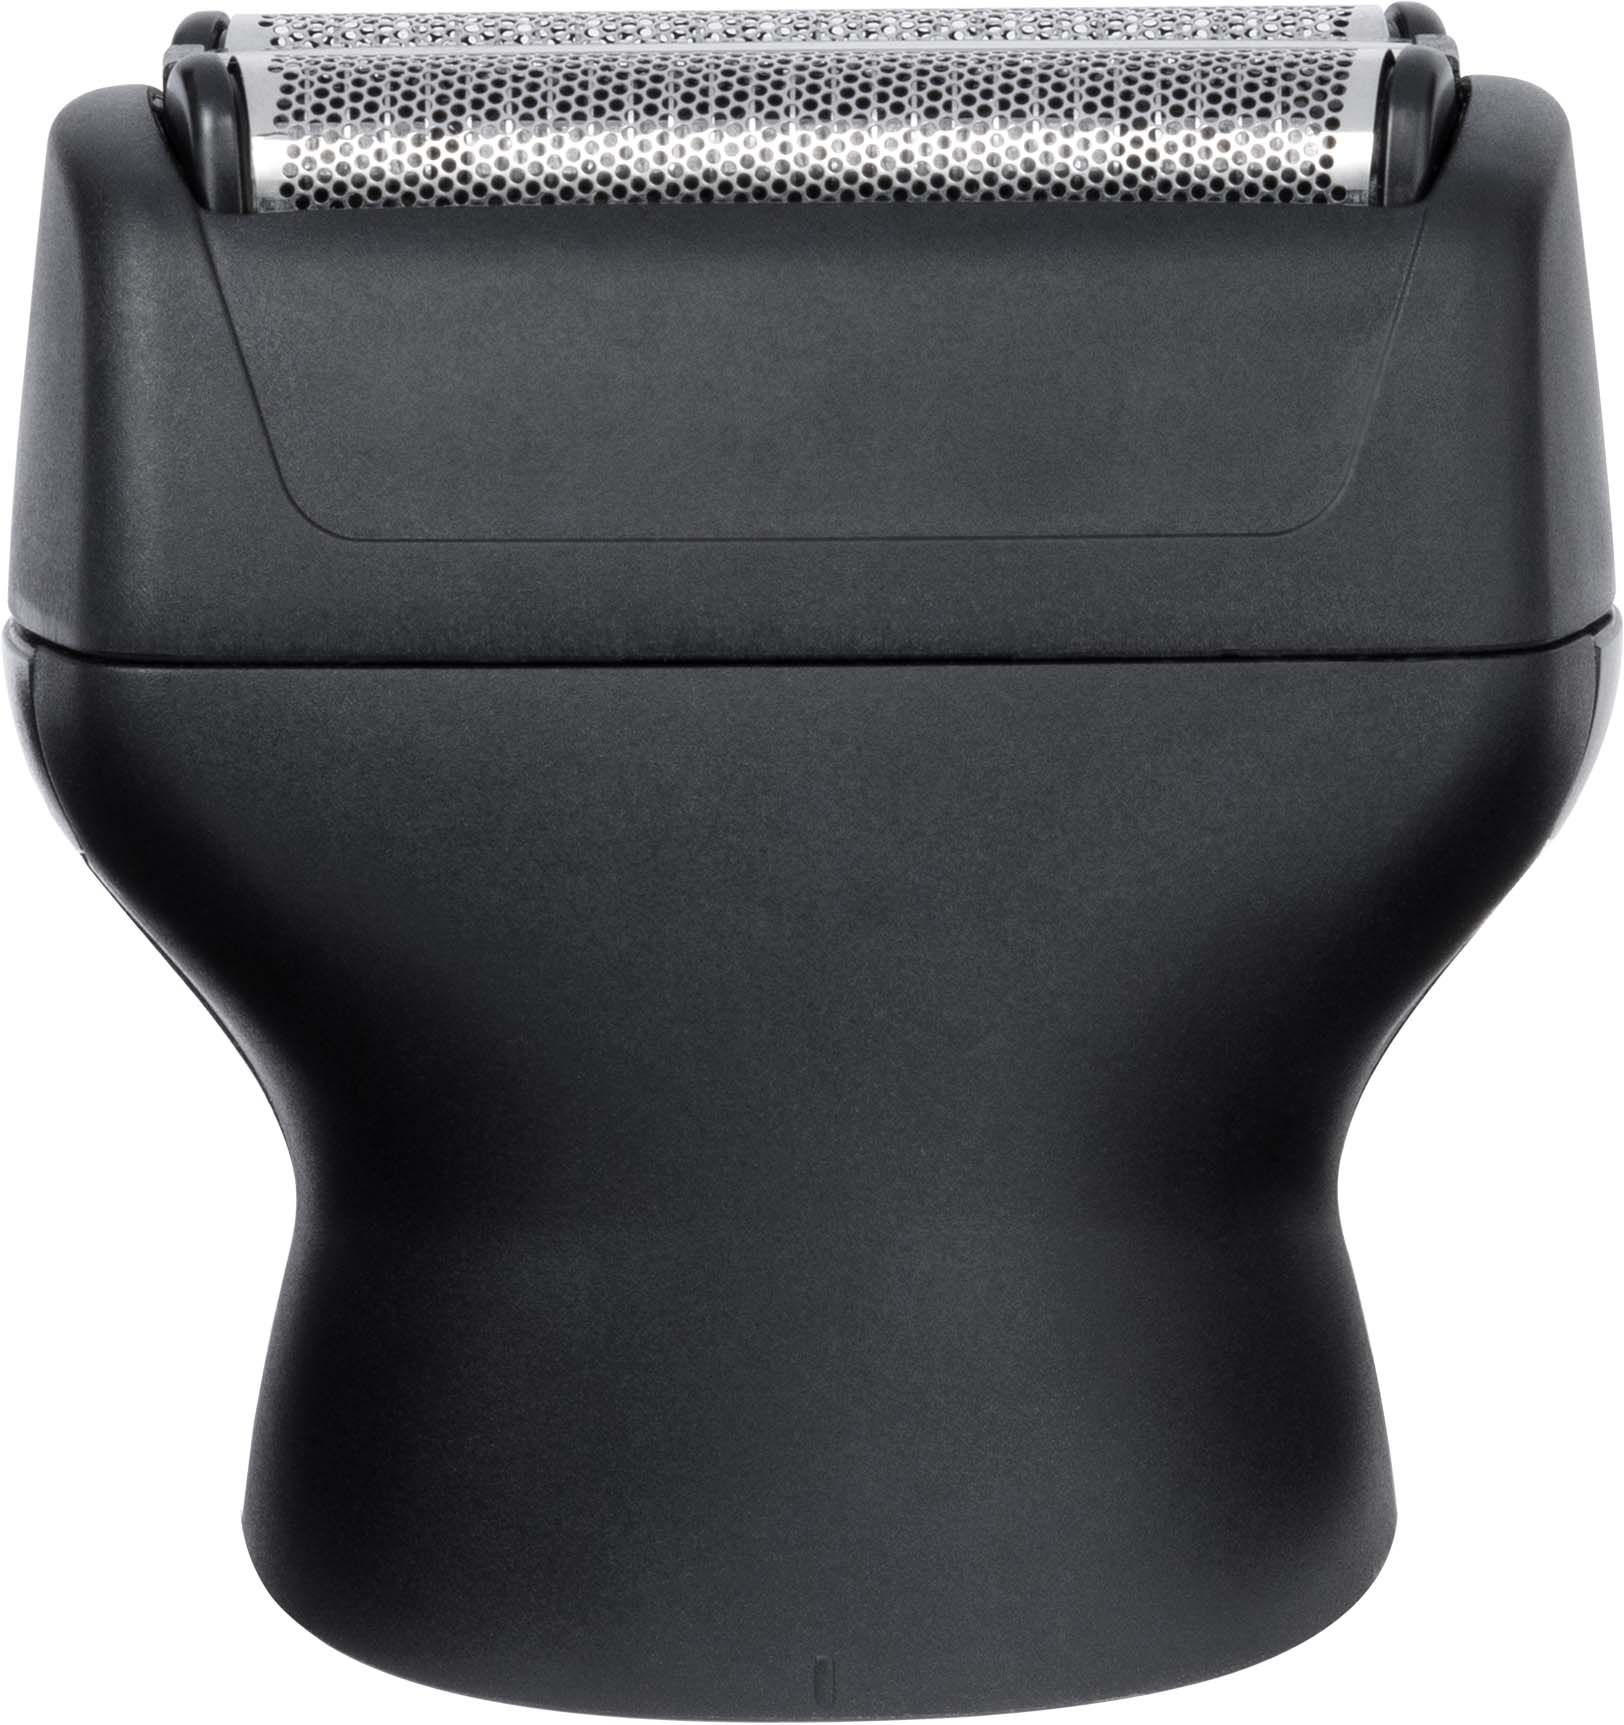 Remington ONE Head & Body Multi-groomer PG760 | Haarschneider